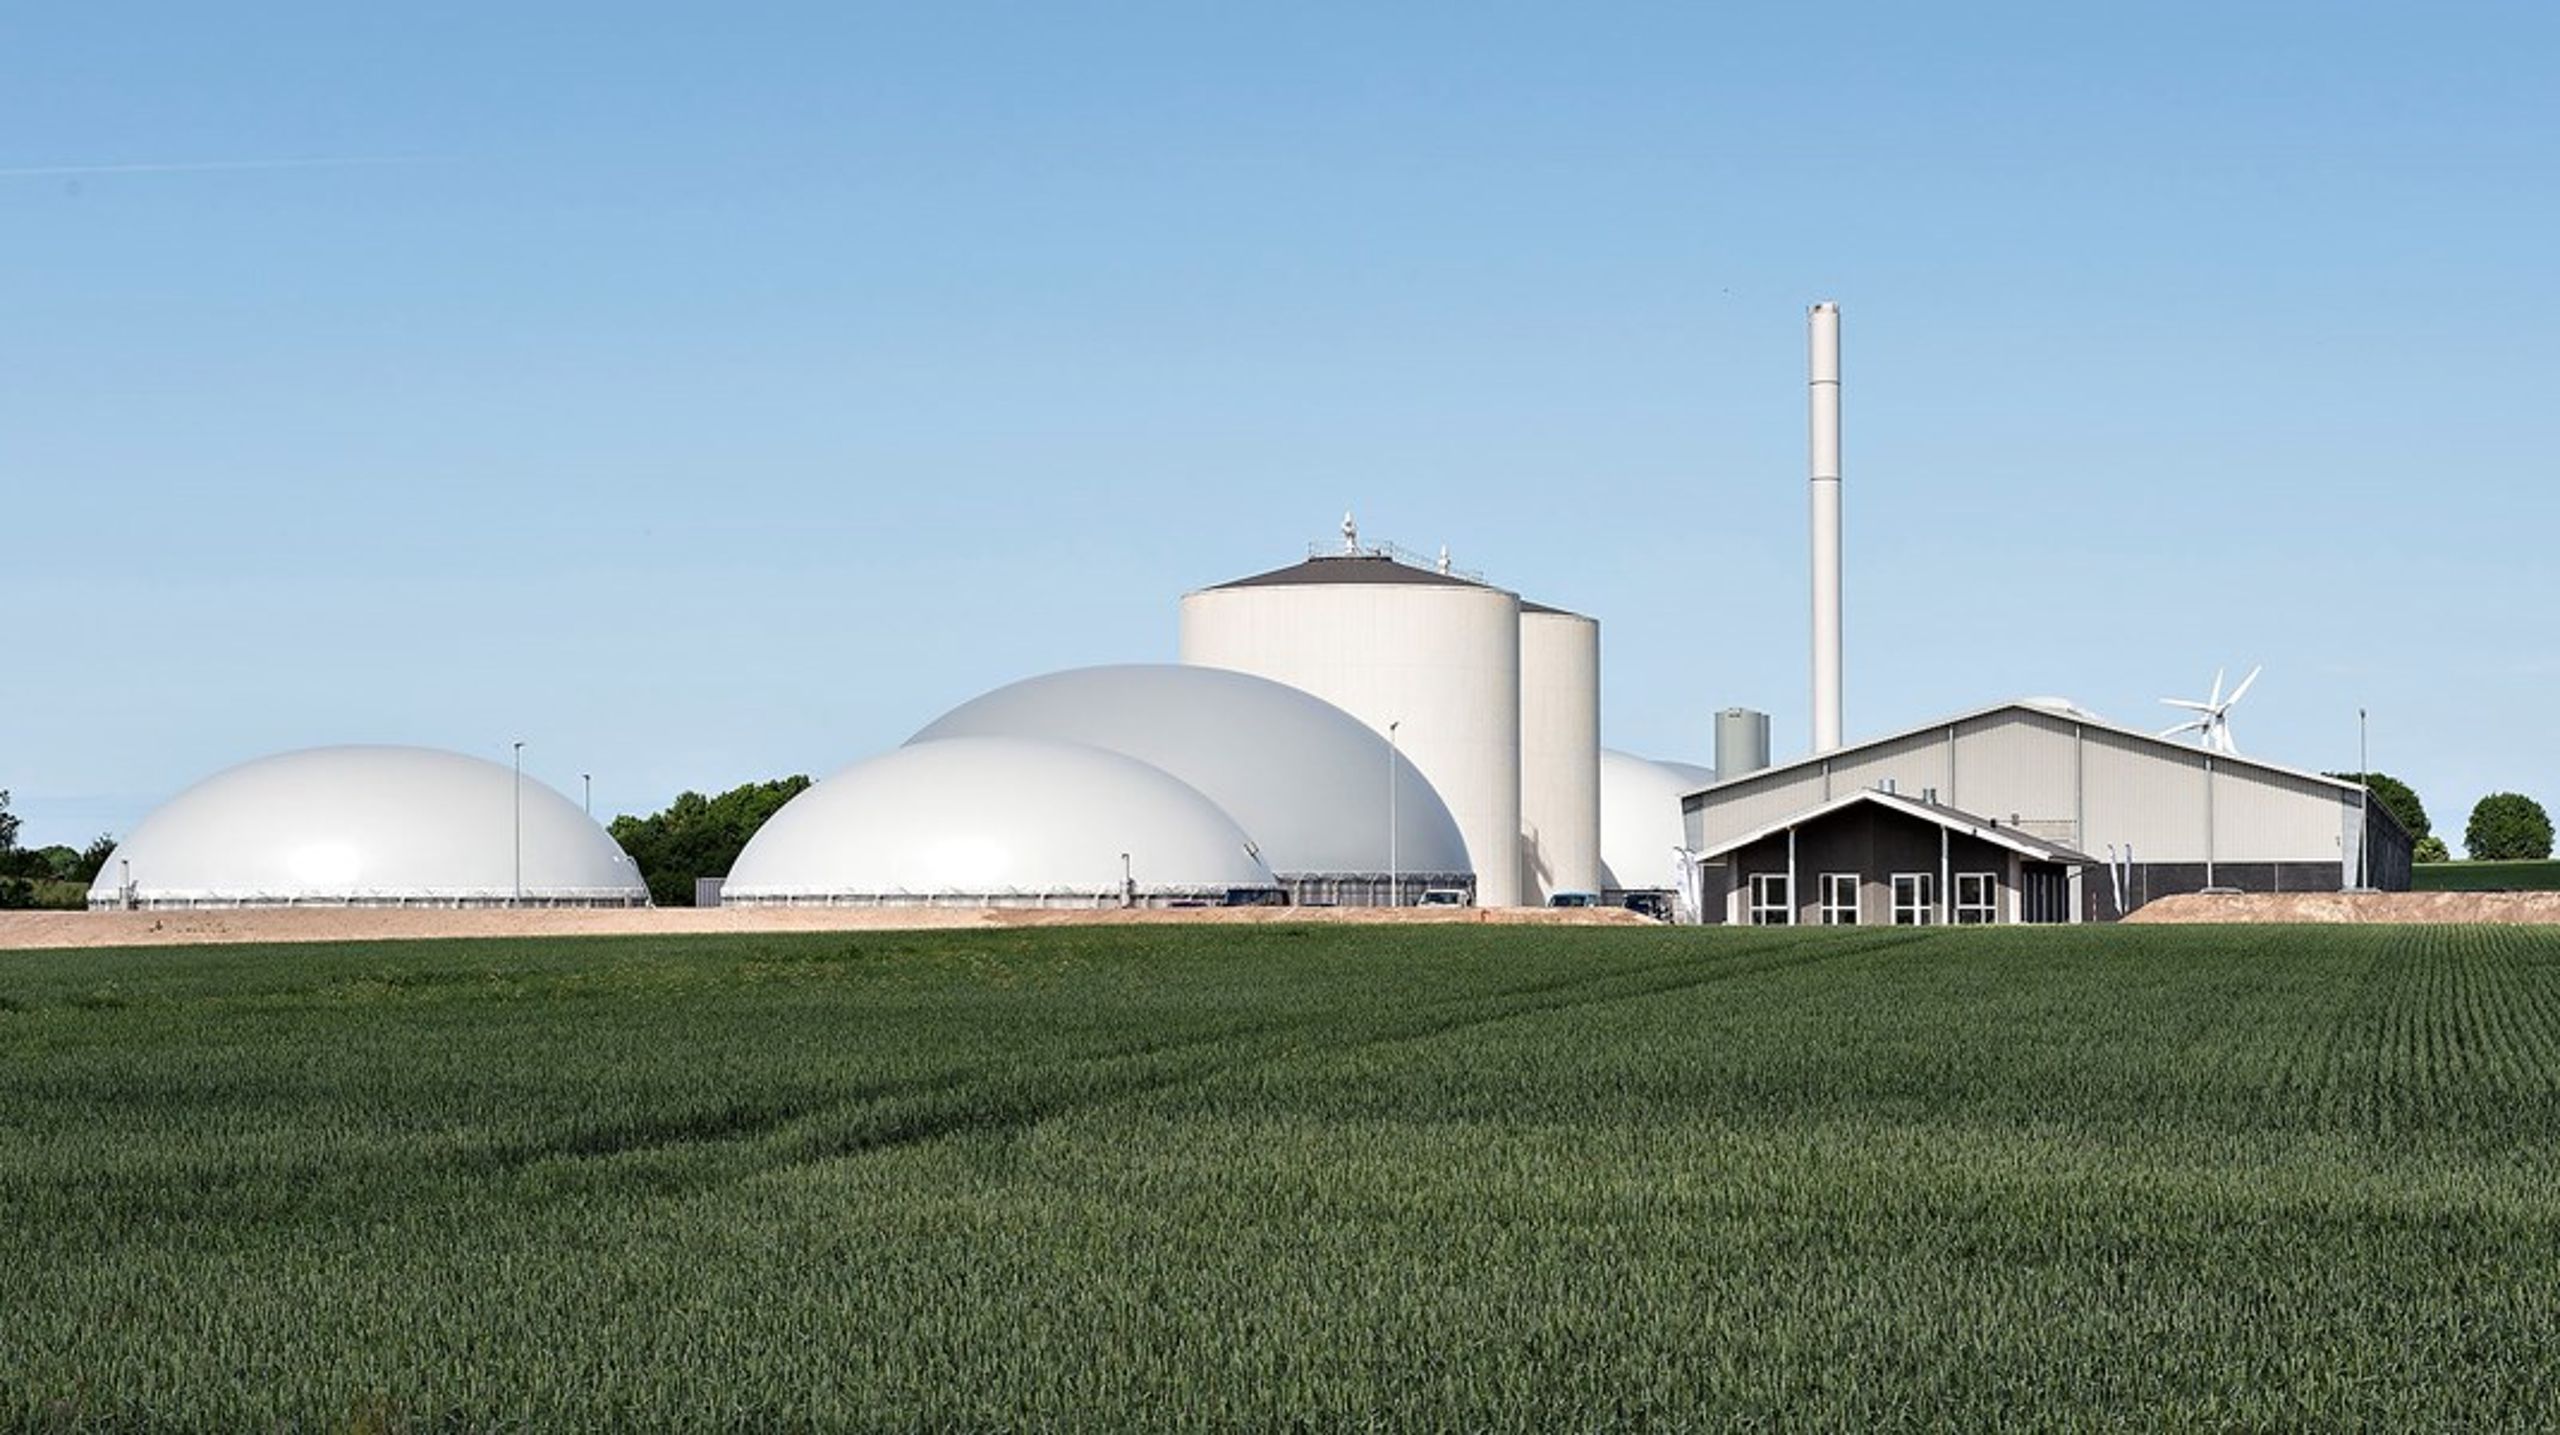 Biogasanlægget GrønGas Vrå syd for Hjørring producerer&nbsp;biometan fra cirka 250.000 tons gylle årligt,&nbsp;der ellers ville være havnet som ubehandlet gødning på landmændenes marker. Biogasanlægget&nbsp;er direkte tilsluttet det danske gasnet.